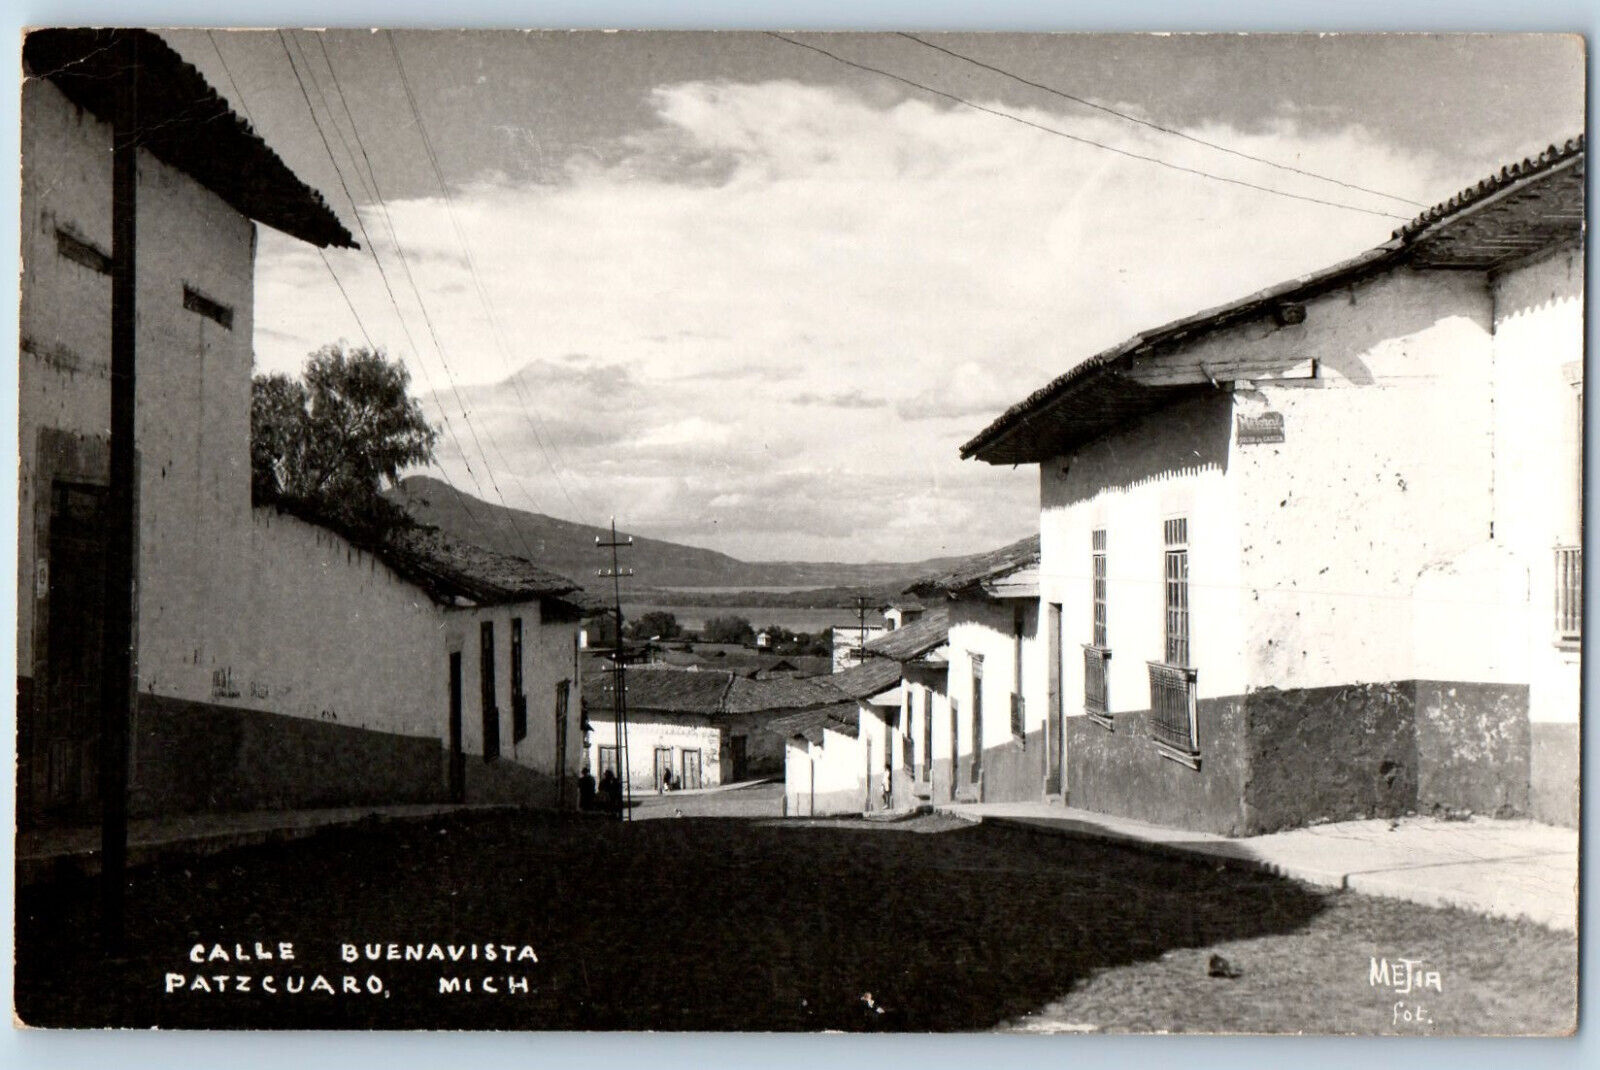 Patzcuaro Michoacan Mexico Postcard Calle Buenavista c1930's Vintage RPPC Photo